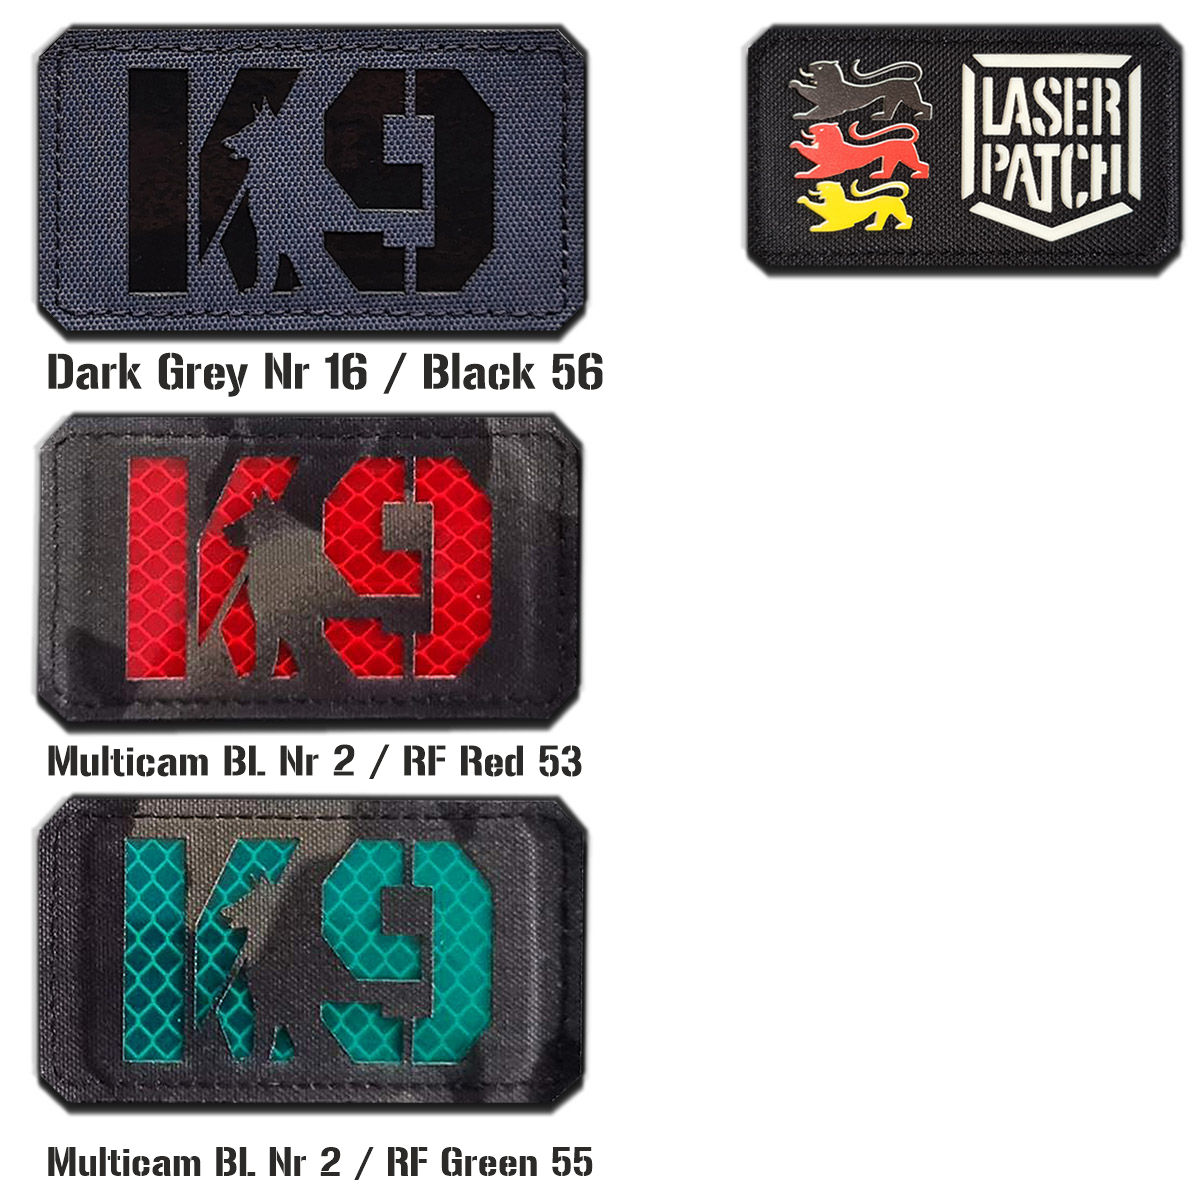 K9 Laser Cut Patch